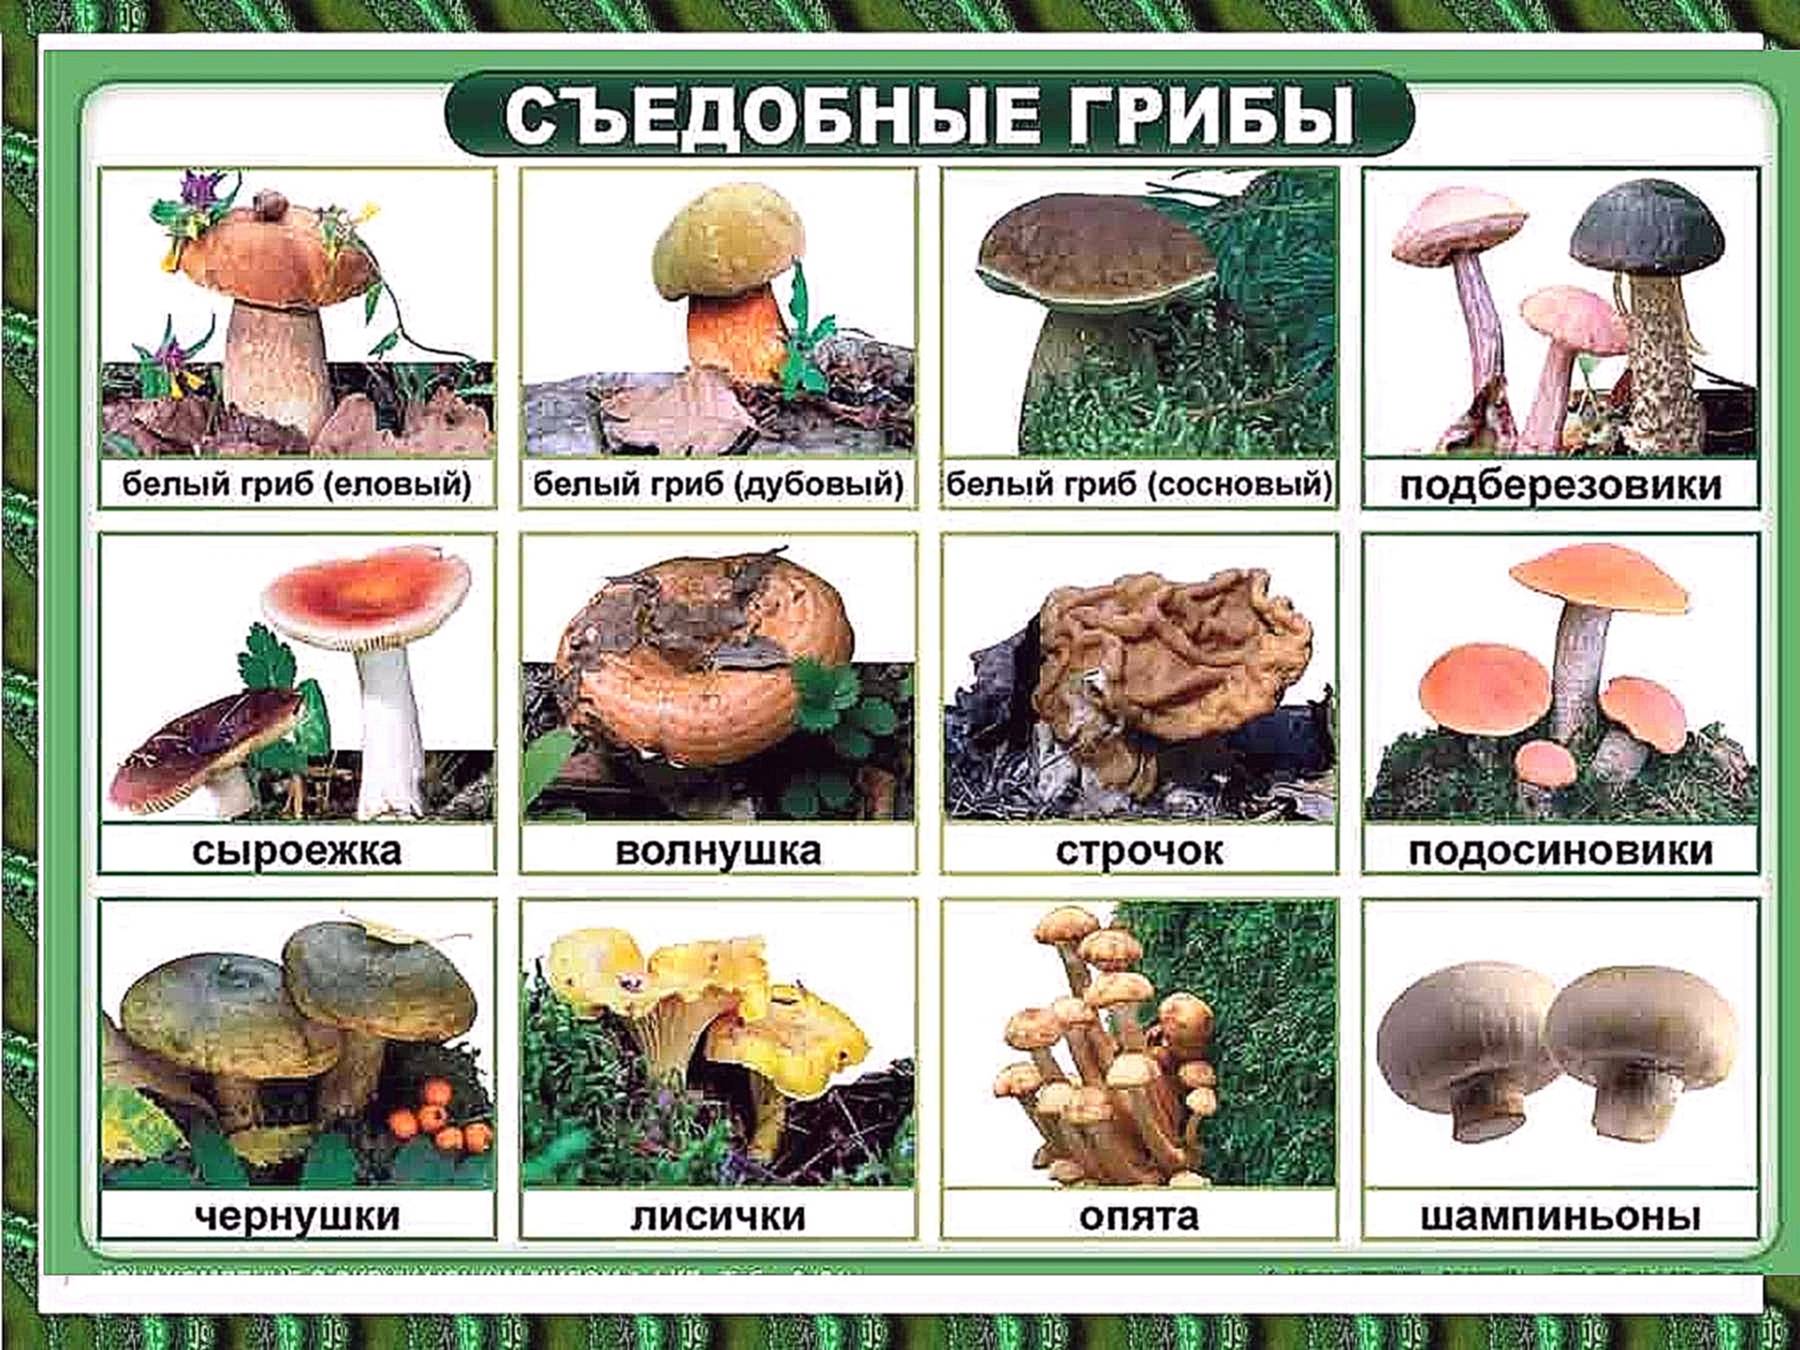 Грибы псковской области и пскова в 2023г: фото, описания и названия съедобных и ядовитых видов на карте грибных мест